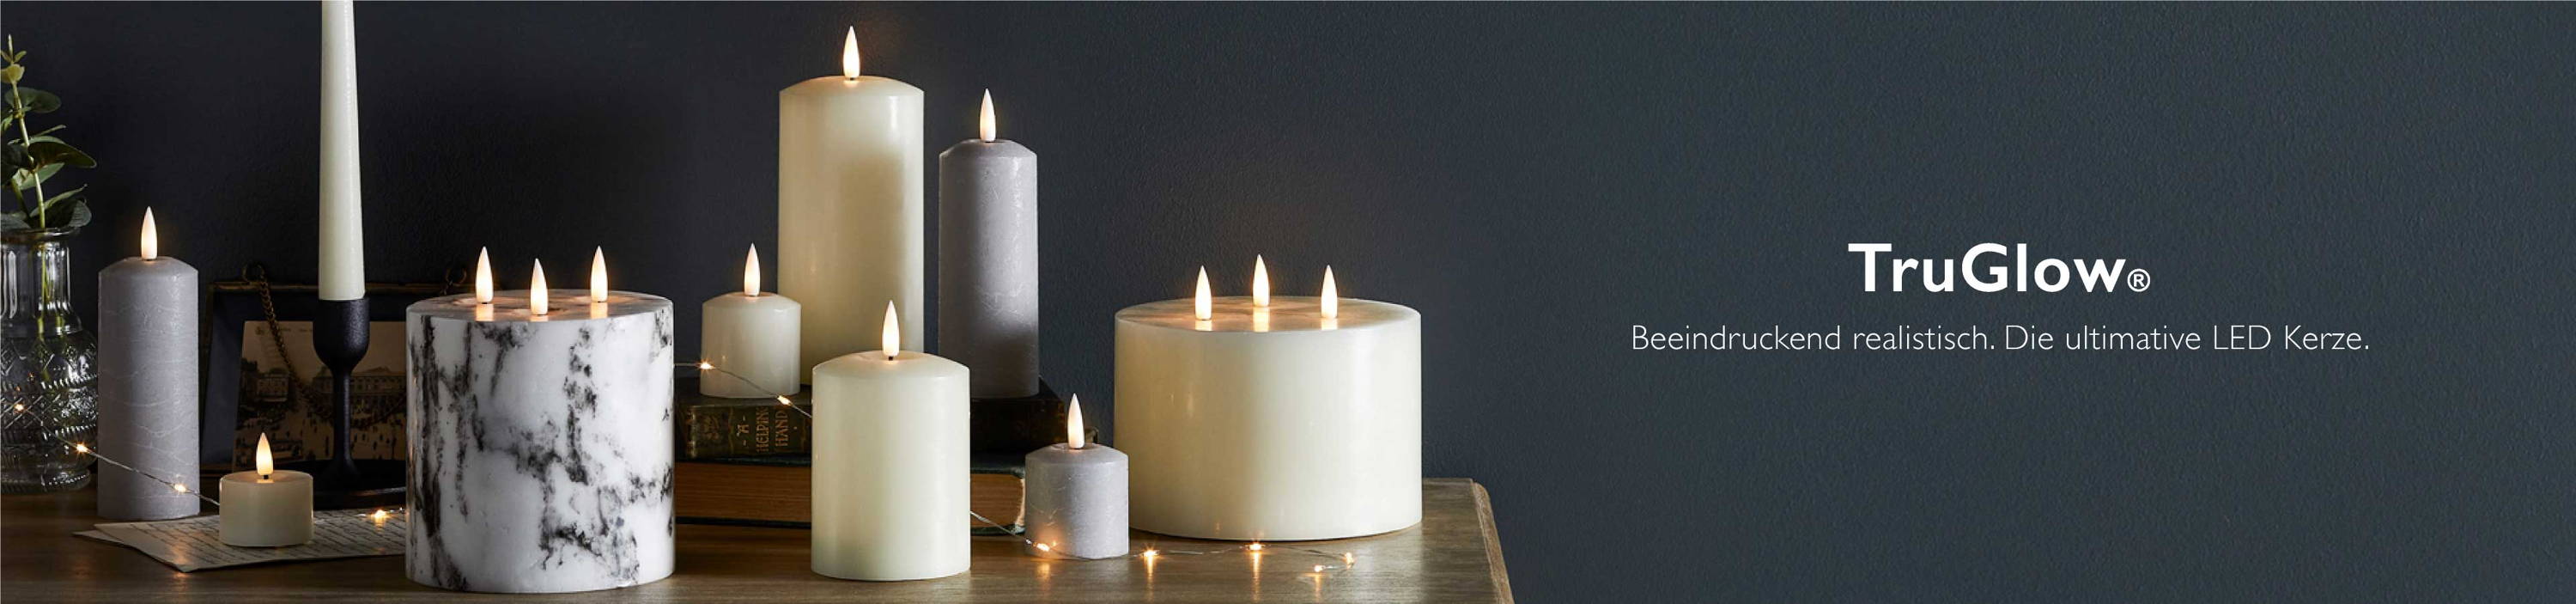 TruGlow LED Kerzen verschiedener Formen und Größen in Grau und Elfenbein auf einer Holzkommode vor einer dunklen Wand